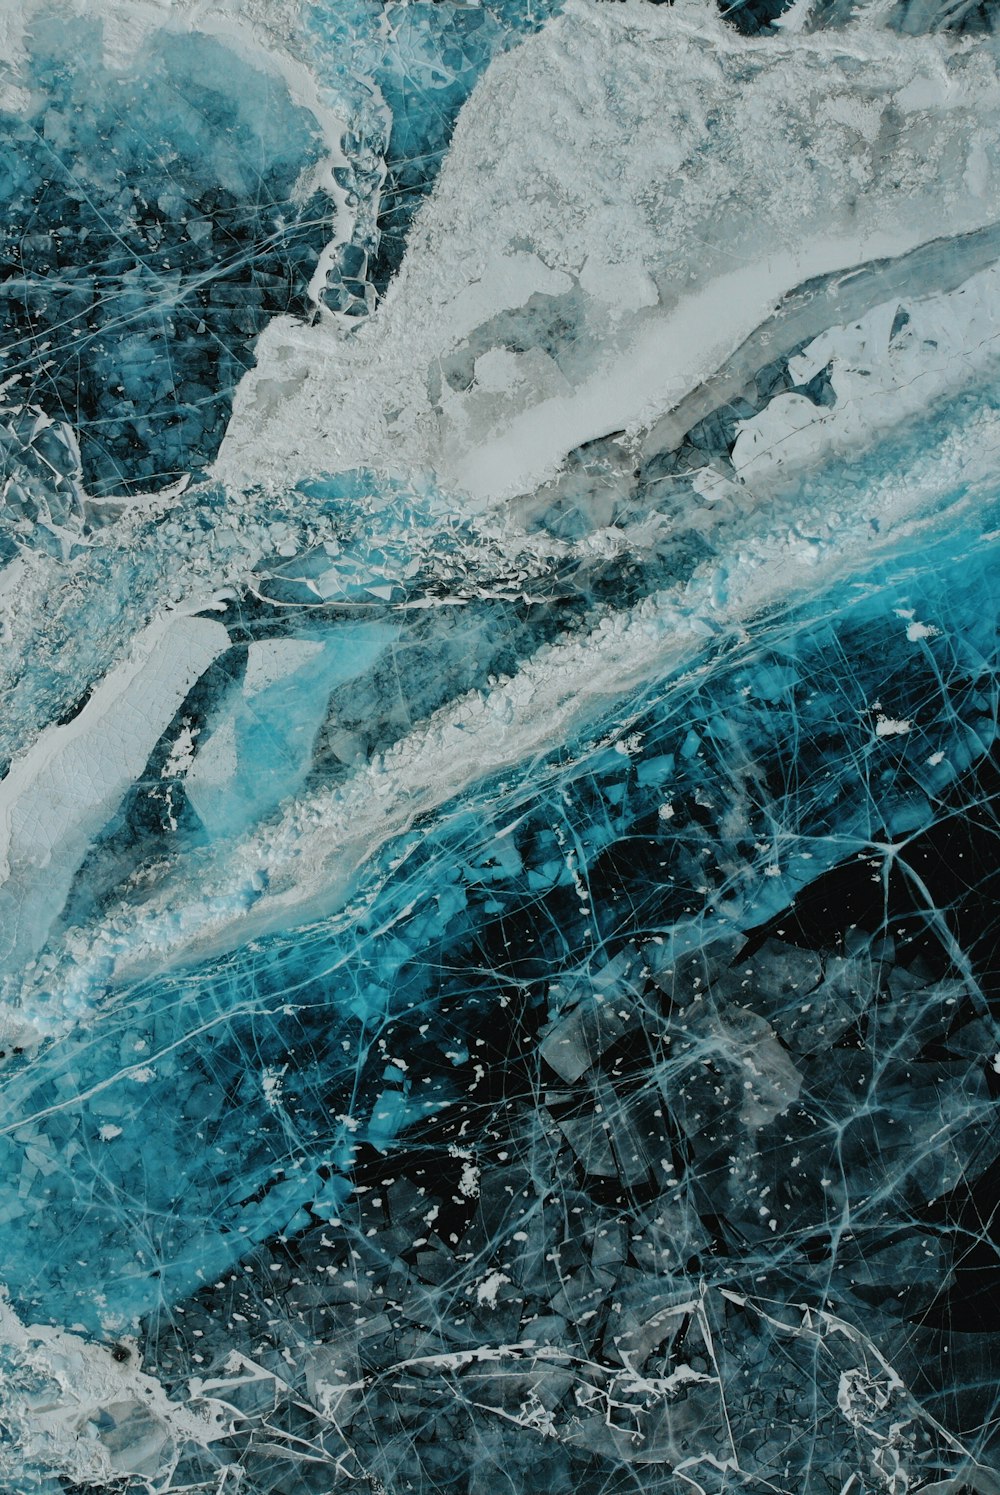 fotografia em close-up de pedra mineral branca e azul